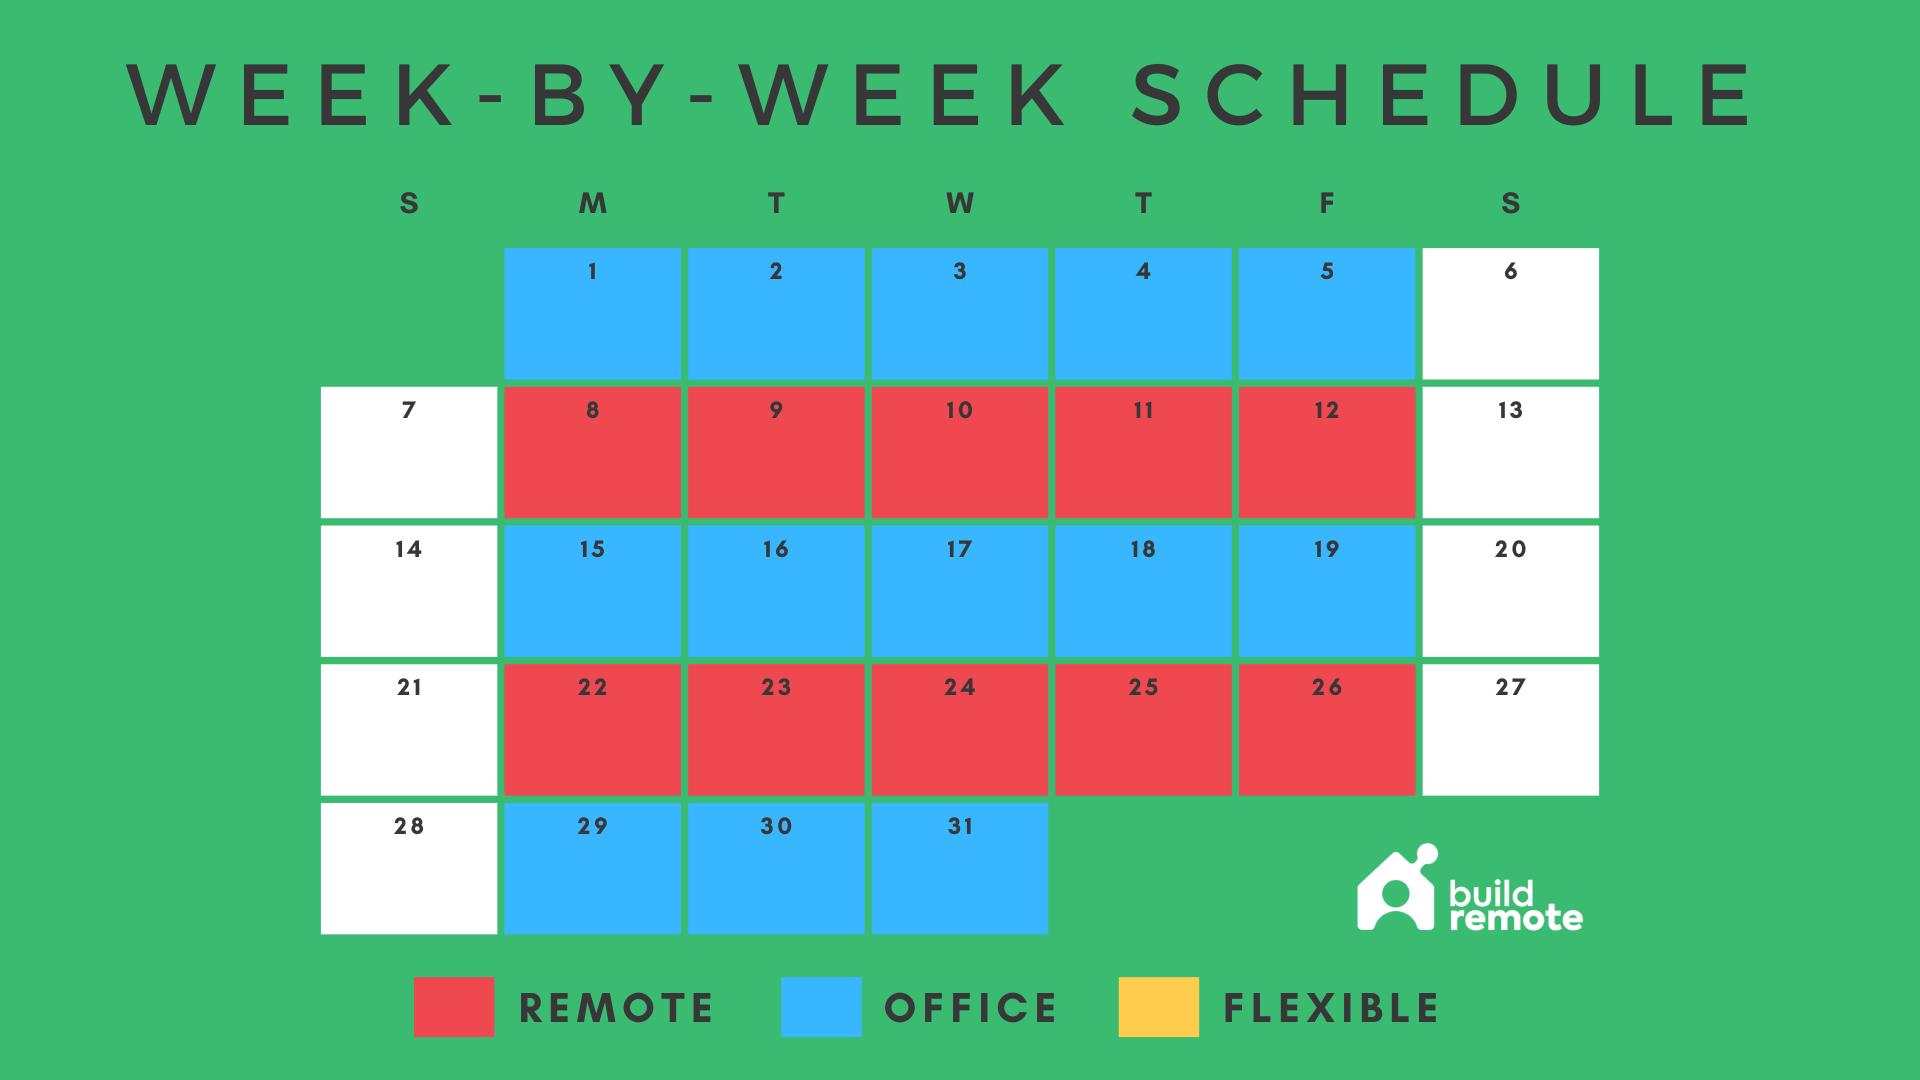 week-by-week hybrid work schedule